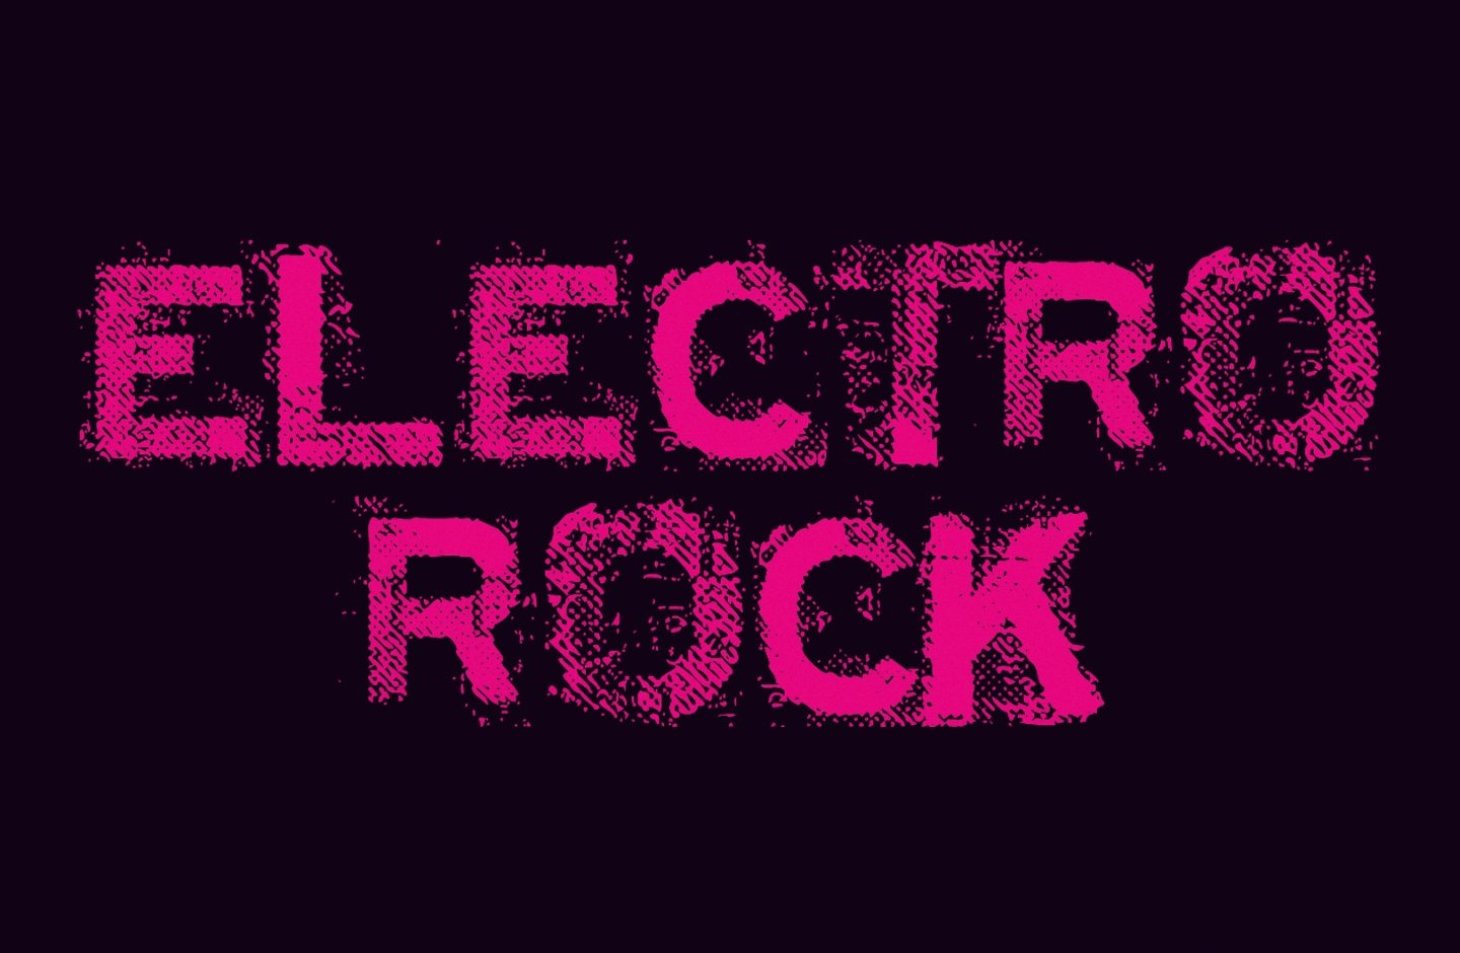 electronic rock